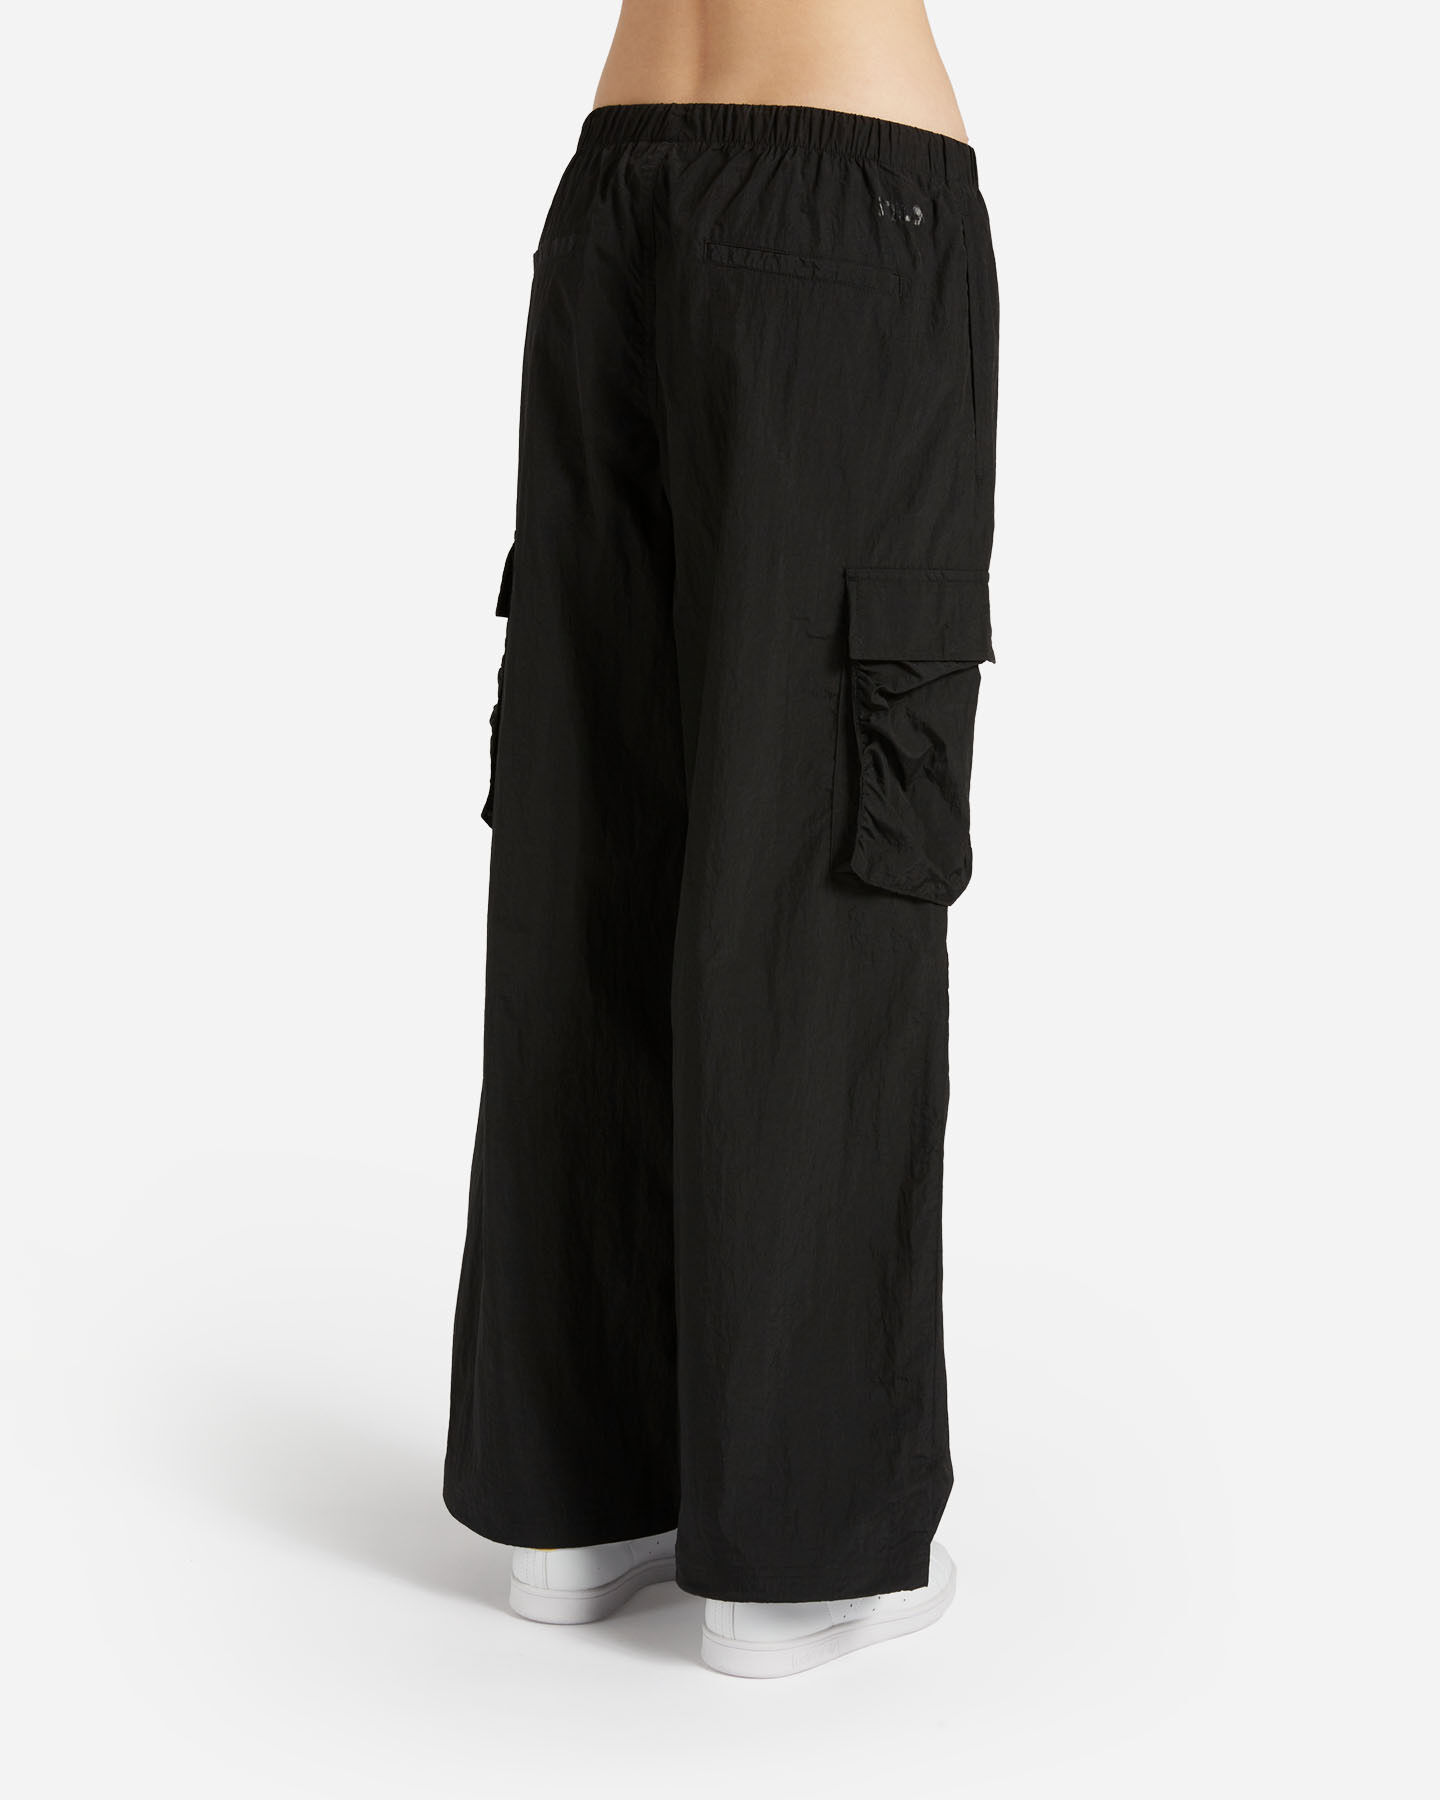  Pantalone FILA RIDER W S4130254|050|XS scatto 1